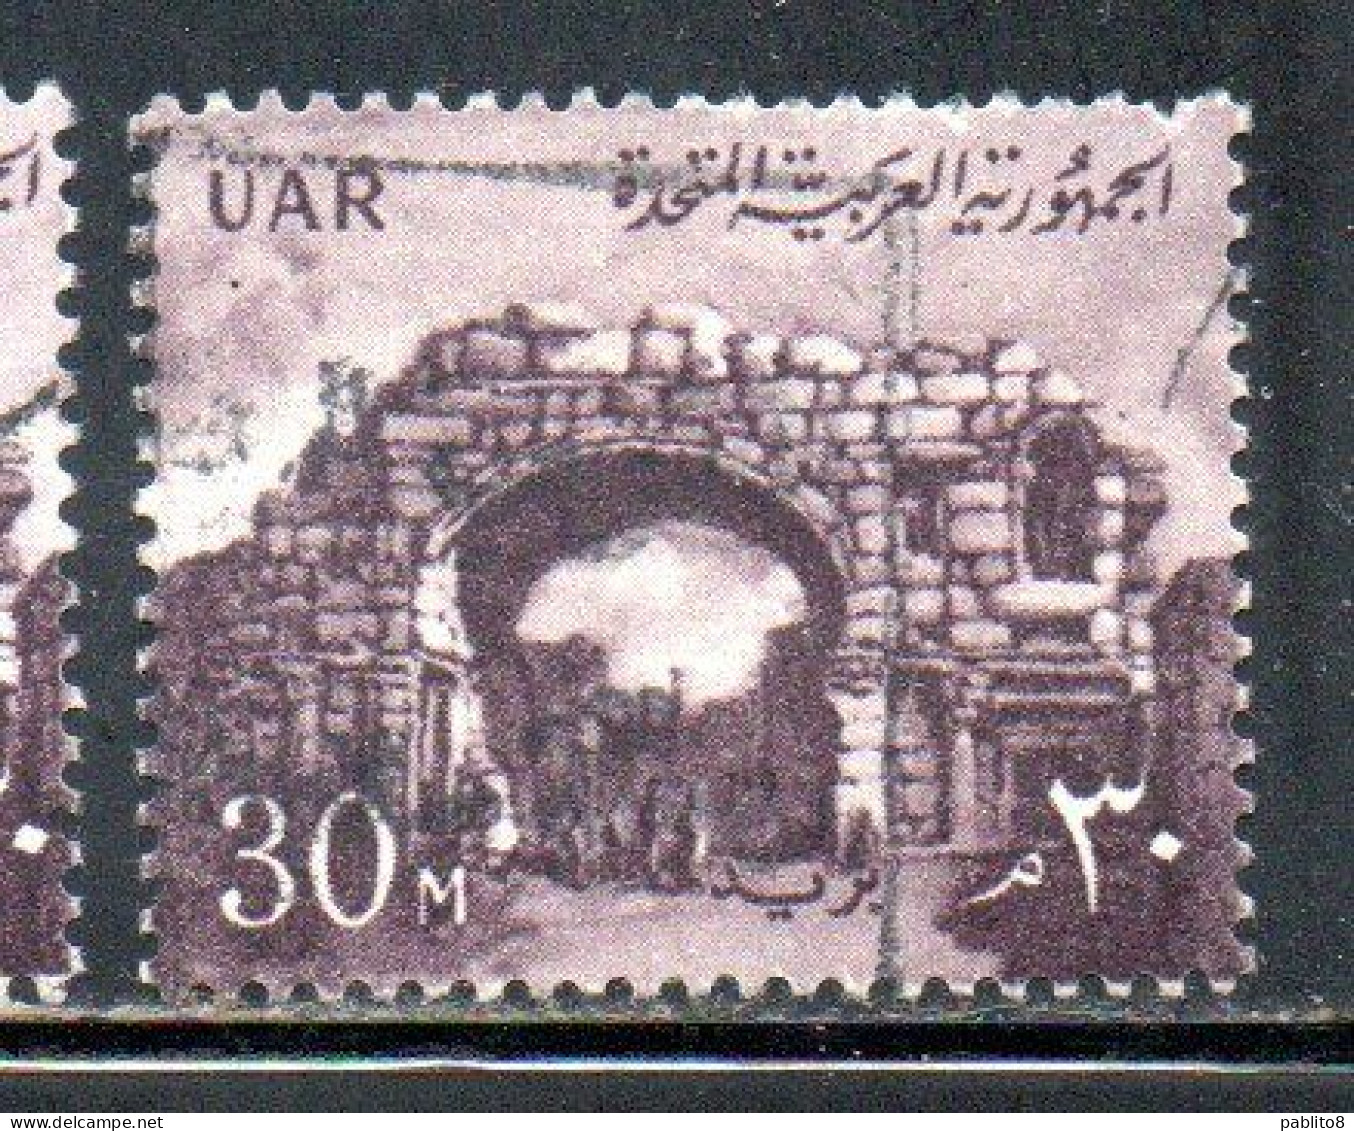 UAR EGYPT EGITTO 1959 1960 ST. SIMON'S GATE BOSRA SYRIA  30m USED USATO OBLITERE' - Usati